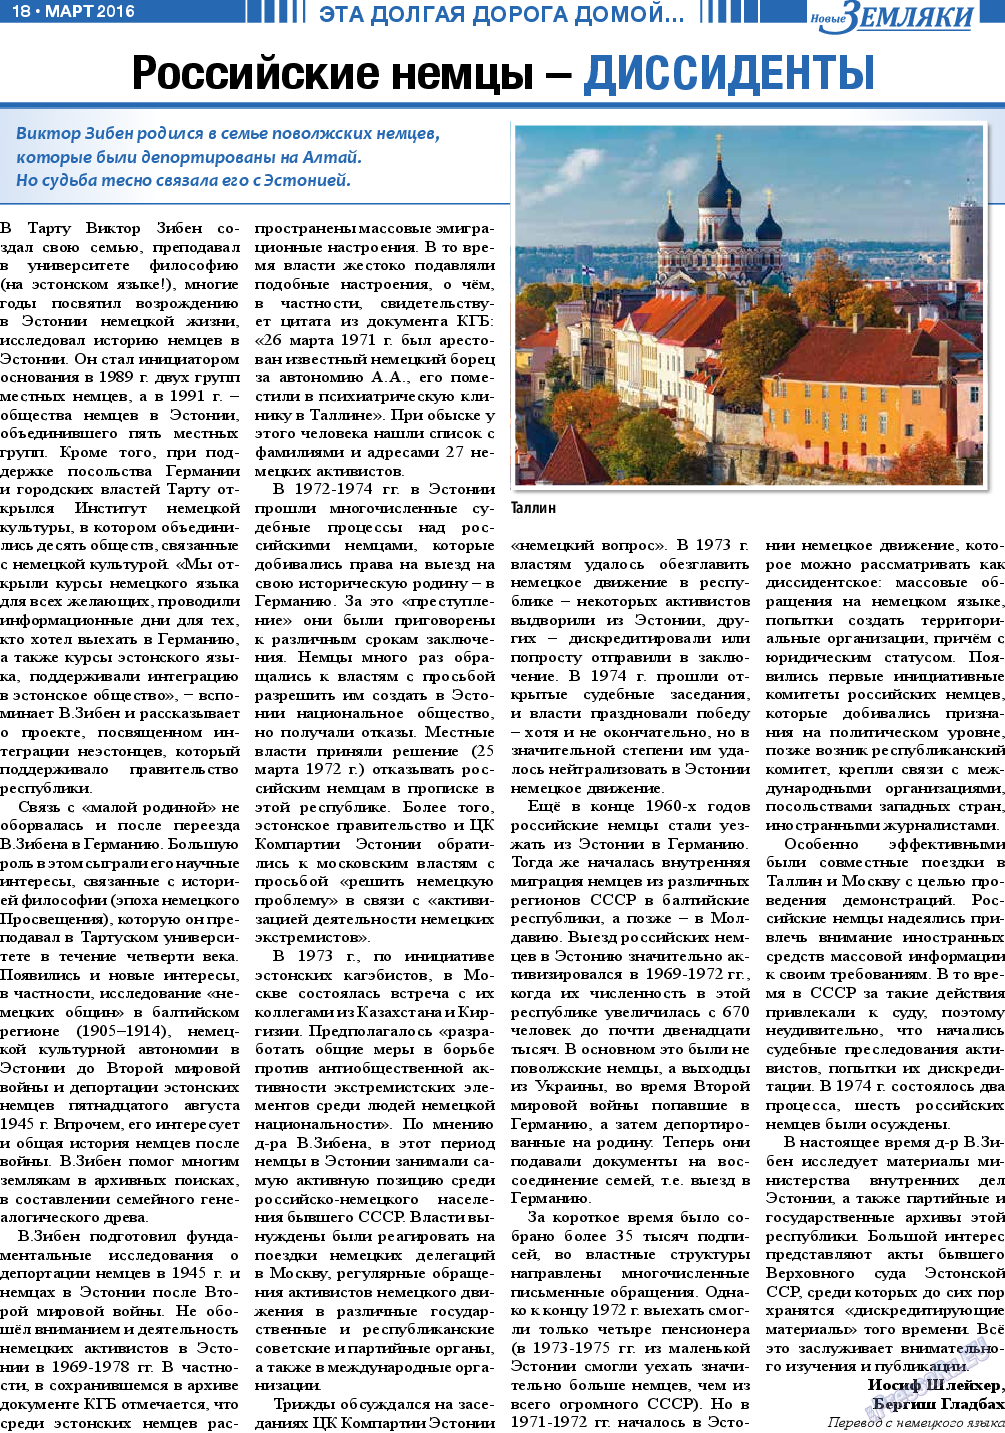 Новые Земляки, газета. 2016 №3 стр.18